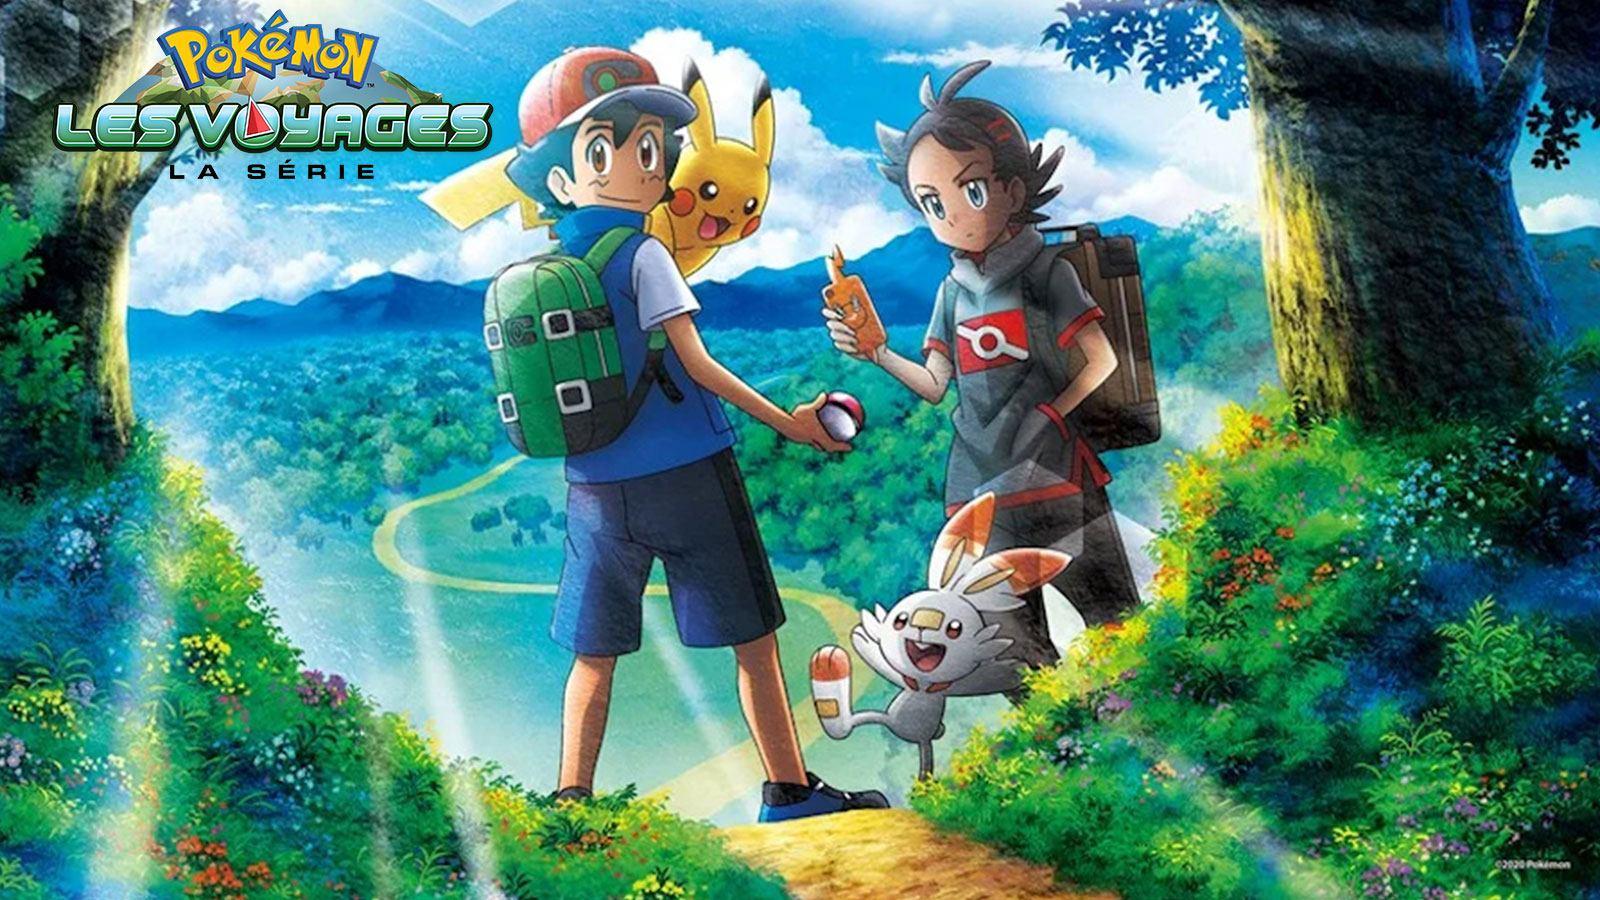 Pokémon, les voyages nouvelle saison